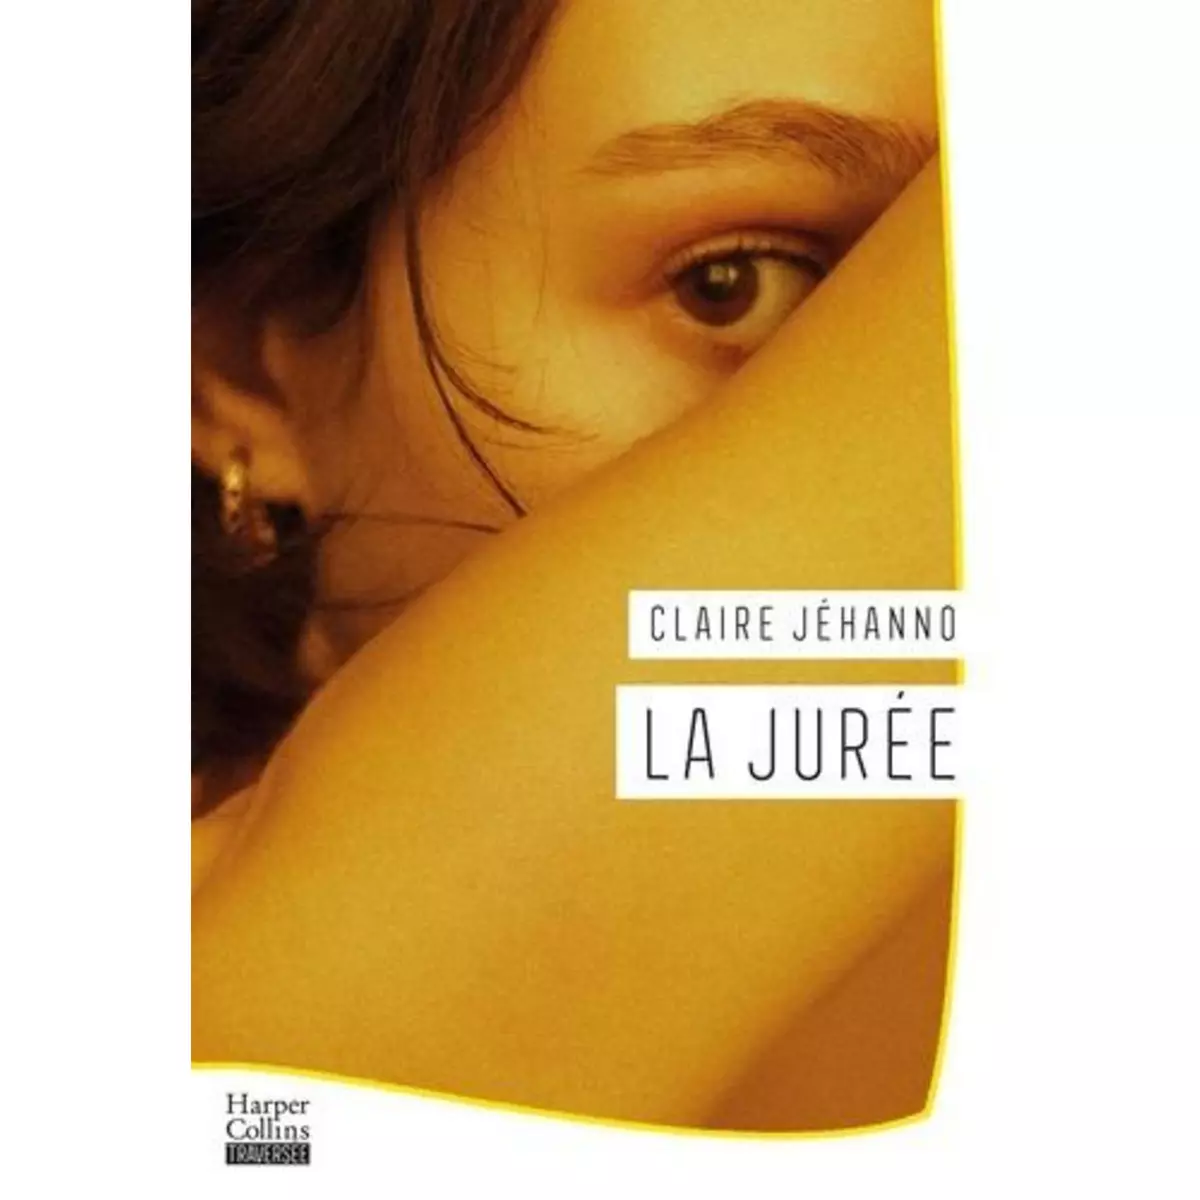  LA JUREE, Jéhanno Claire